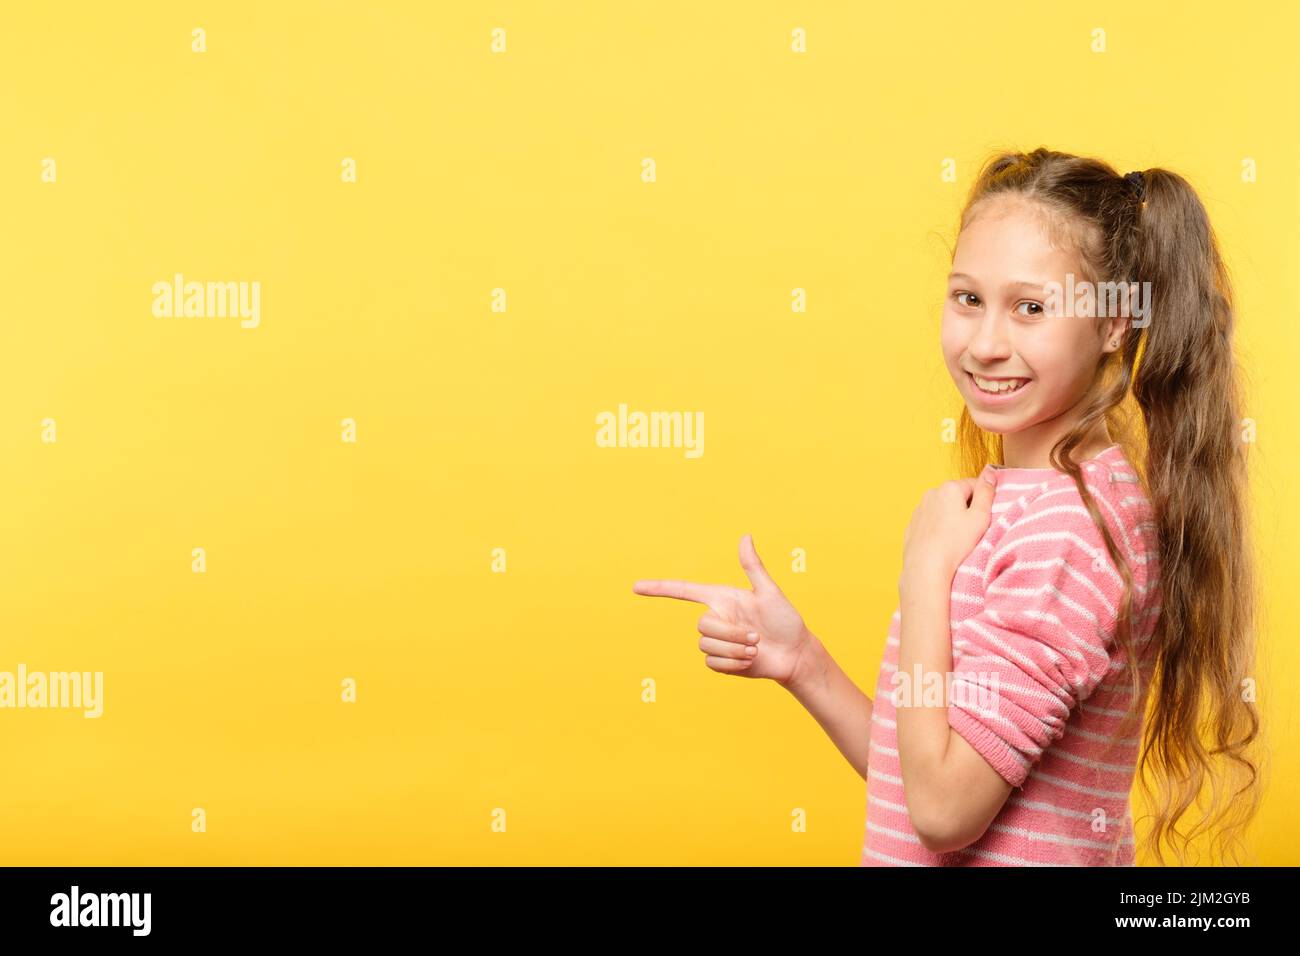 guardi sinistra sorridente ragazza punta il dito che fa pubblicità Foto Stock